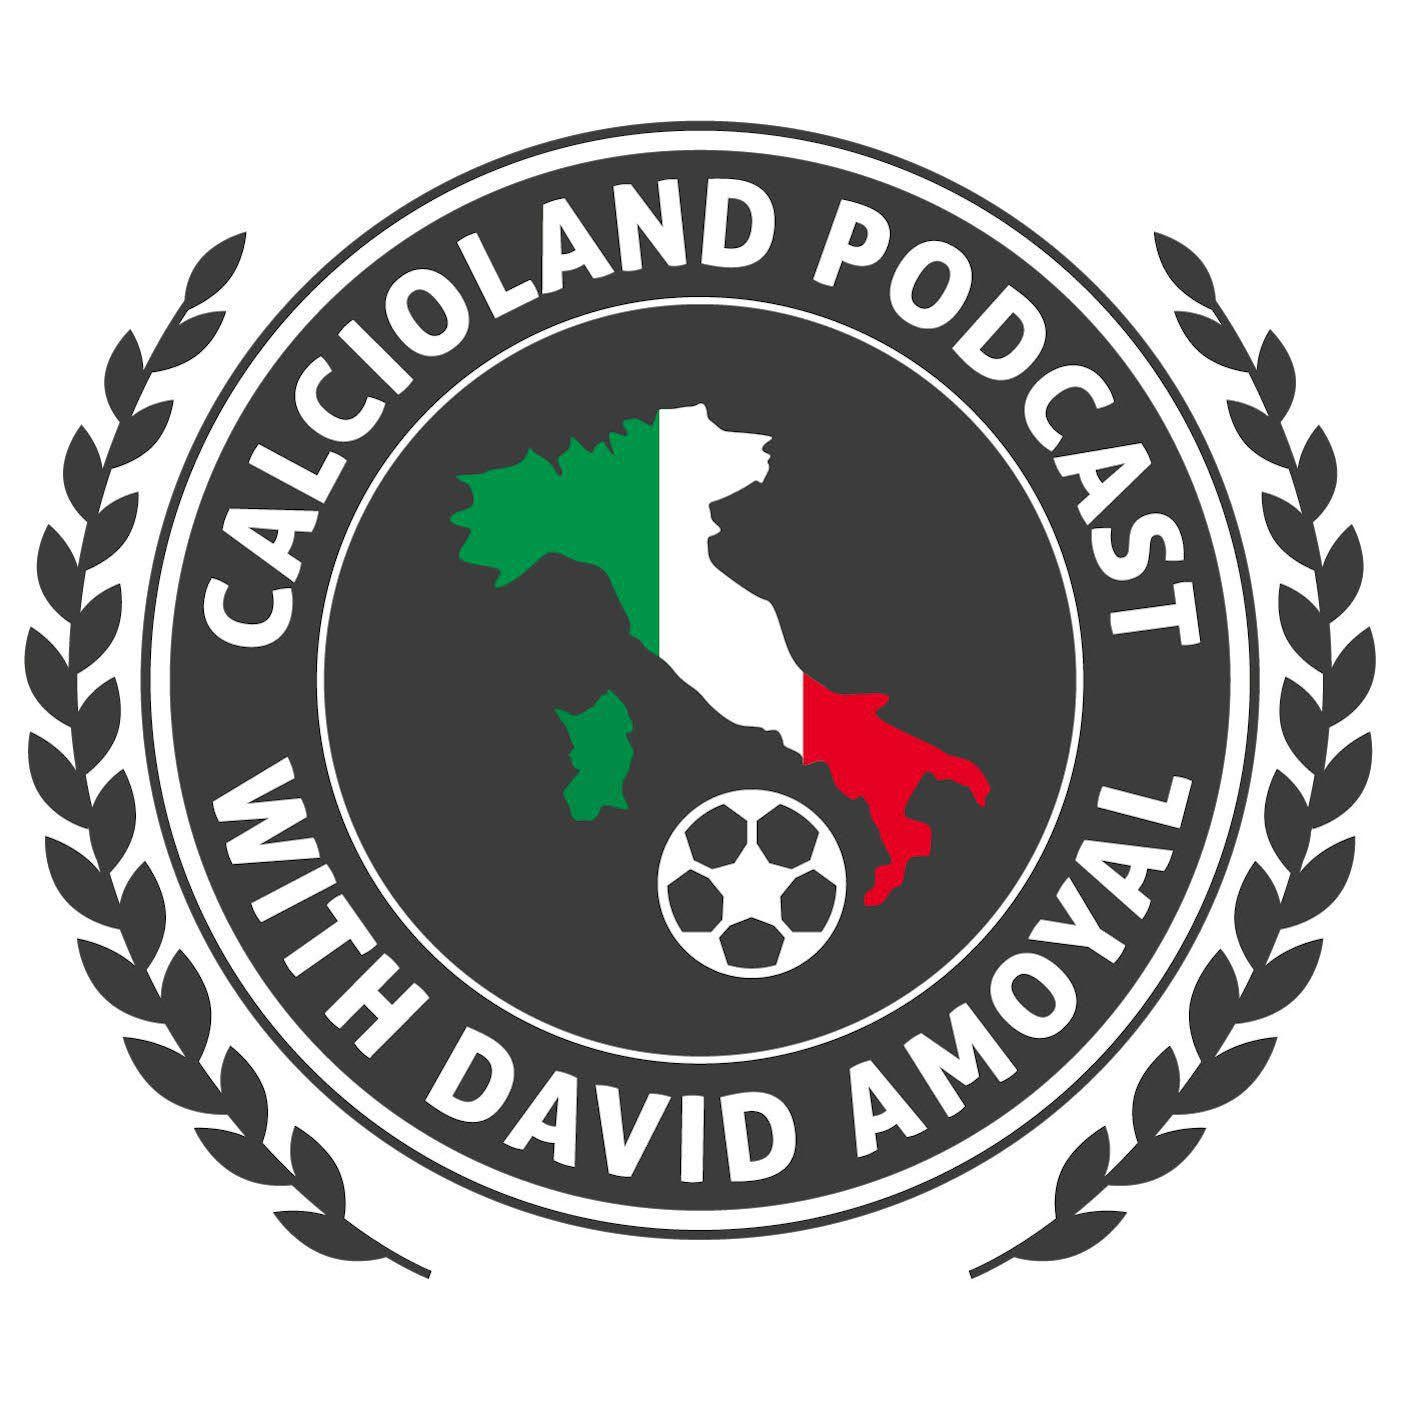 The Calcioland Podcast